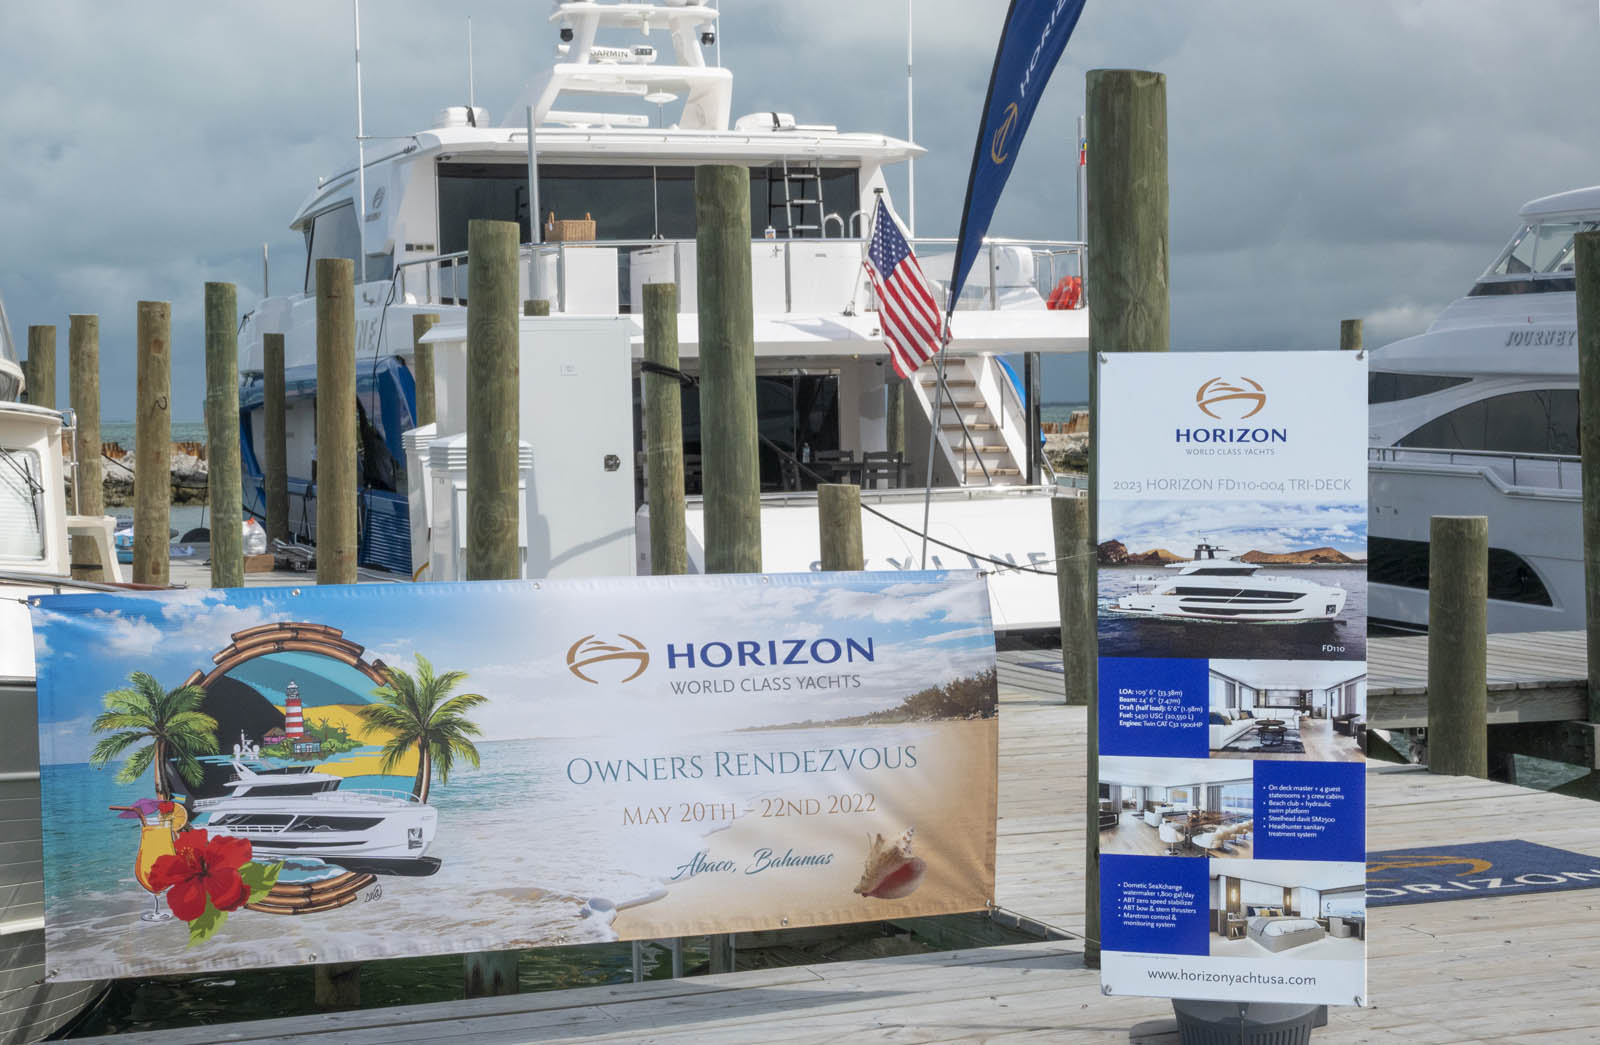 Horizon Yachts Rendezvous banner in the marina overlooking the ocean. 